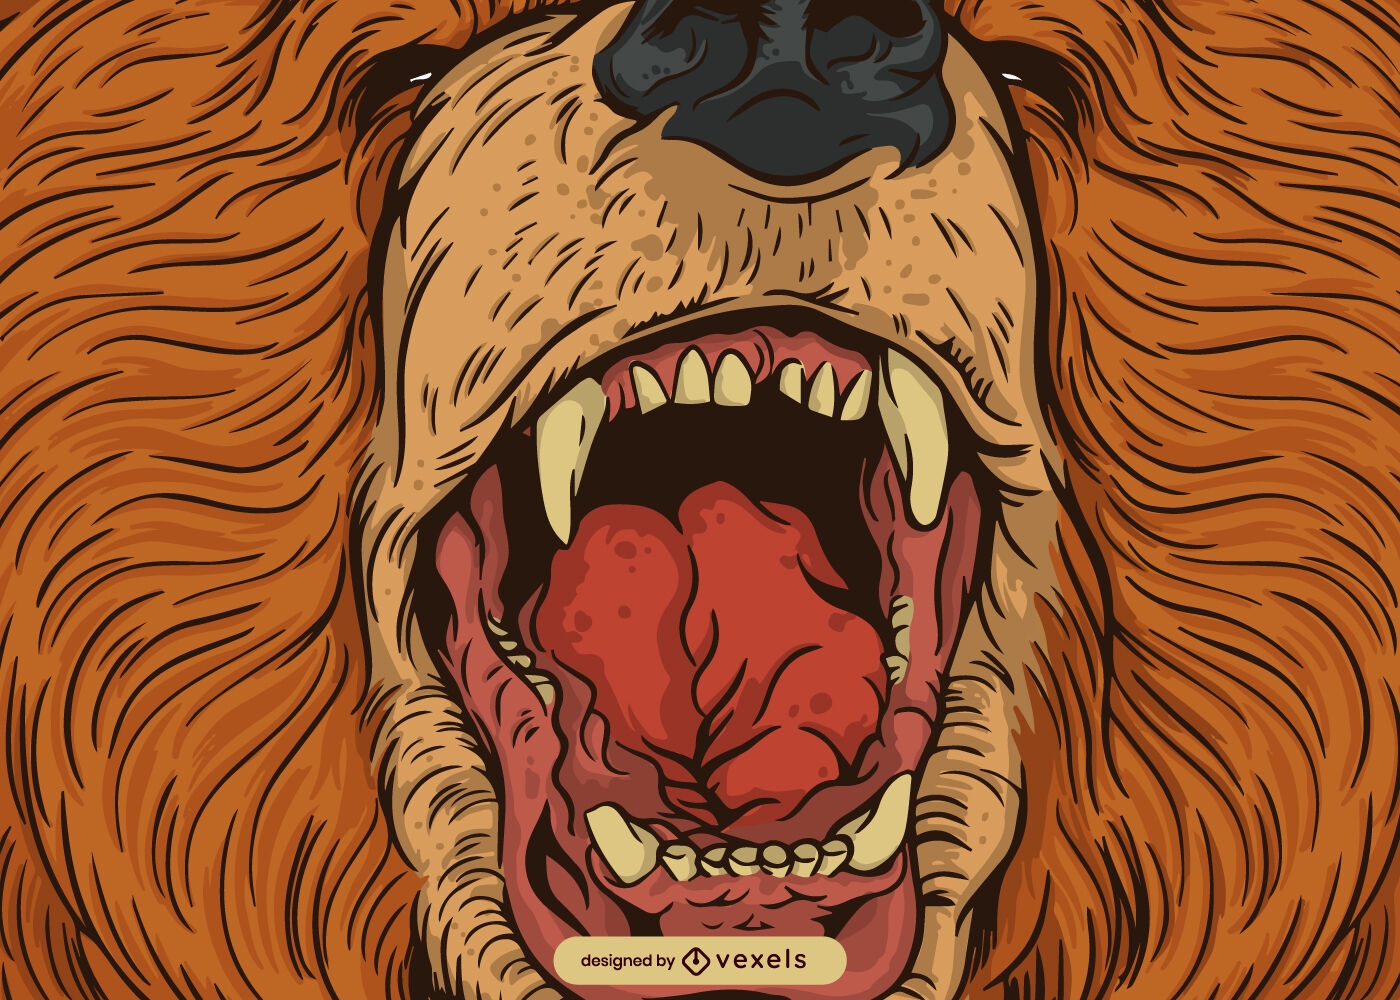 Detalhe detalhado da boca do urso